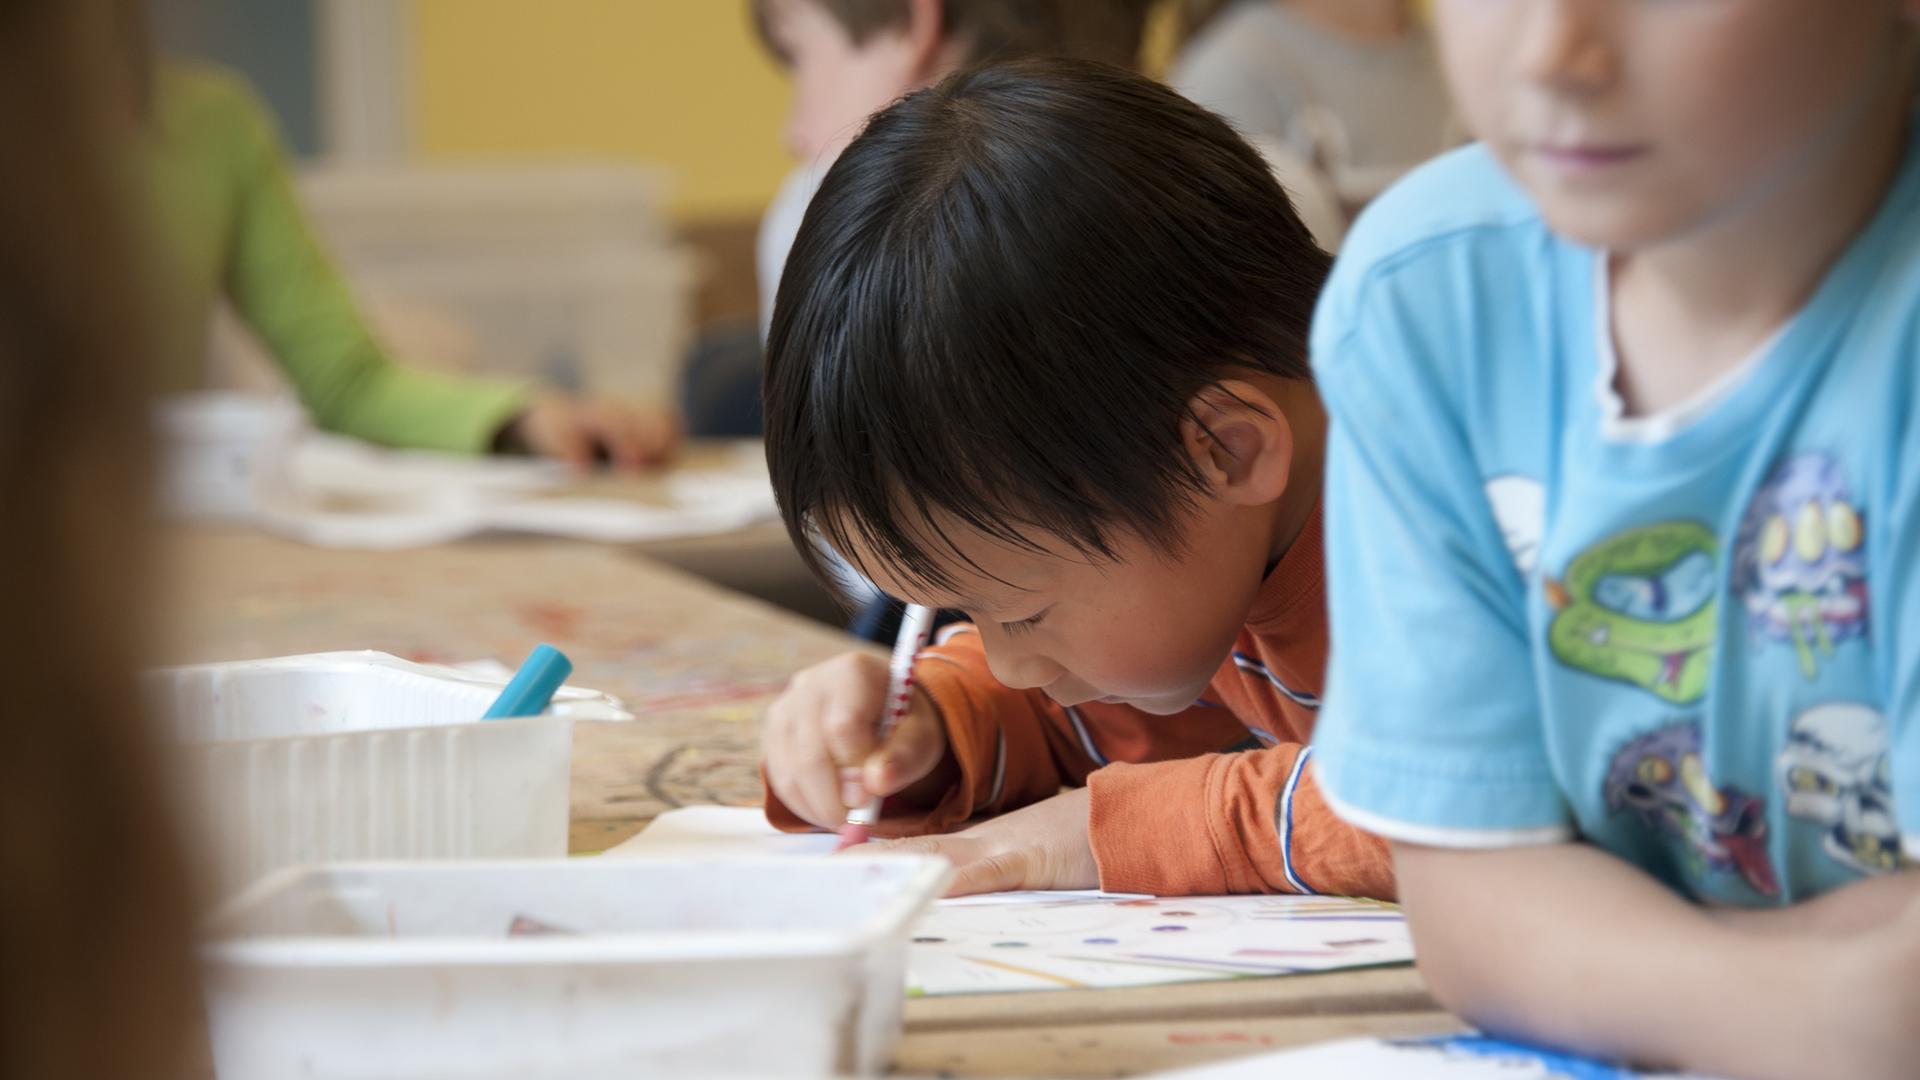 Kinder in einem Klassenzimmer. Im Bildzentrum ist ein Kind mit dunklen Haaren und orangefarbenem Shirt. Es malt.